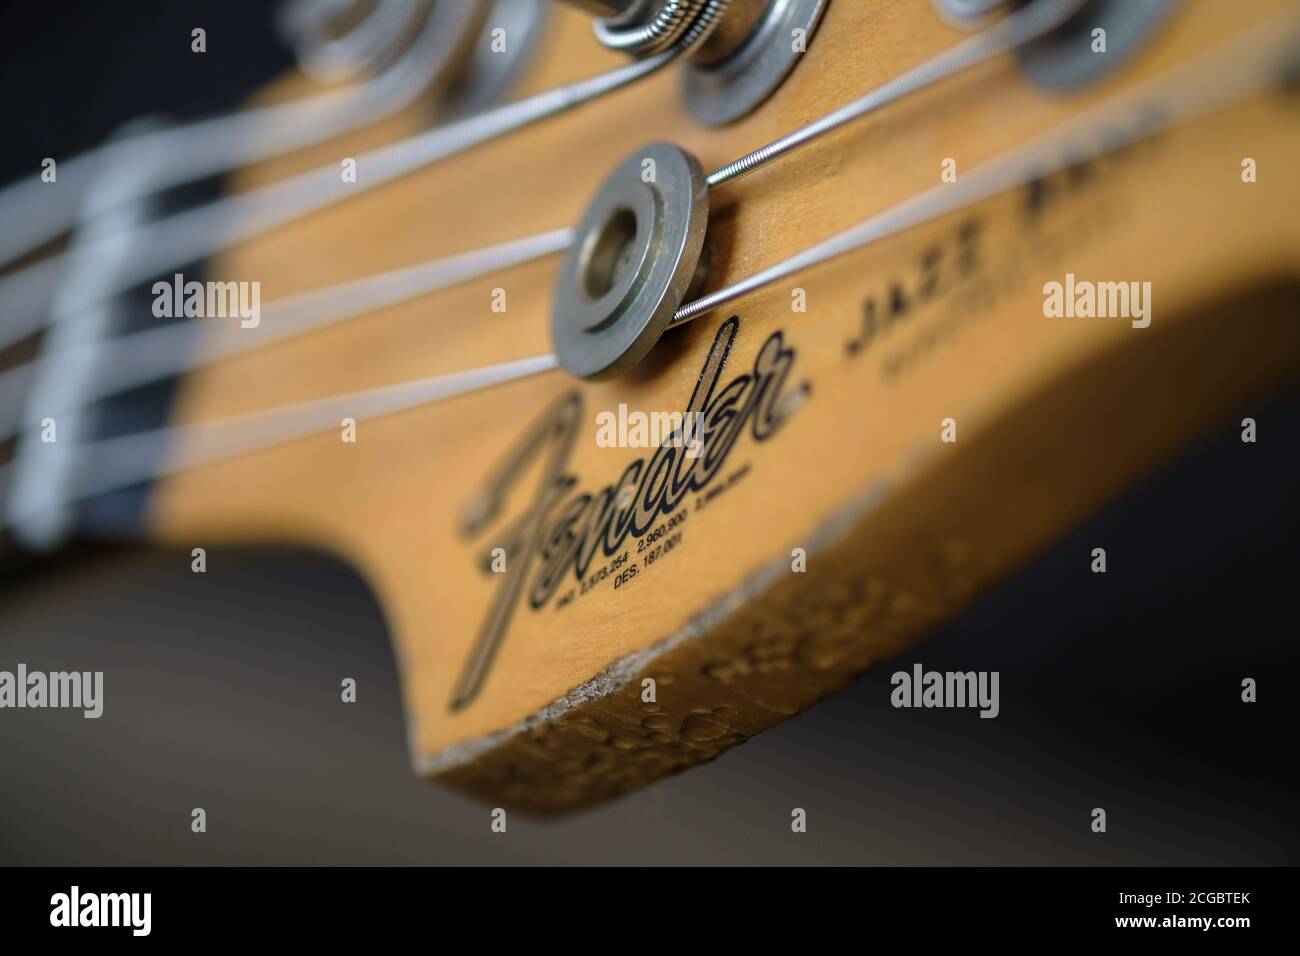 Kopfteil einer Fender Jazz Bass Gitarre, mit Kotflügel-Logo Stockfoto